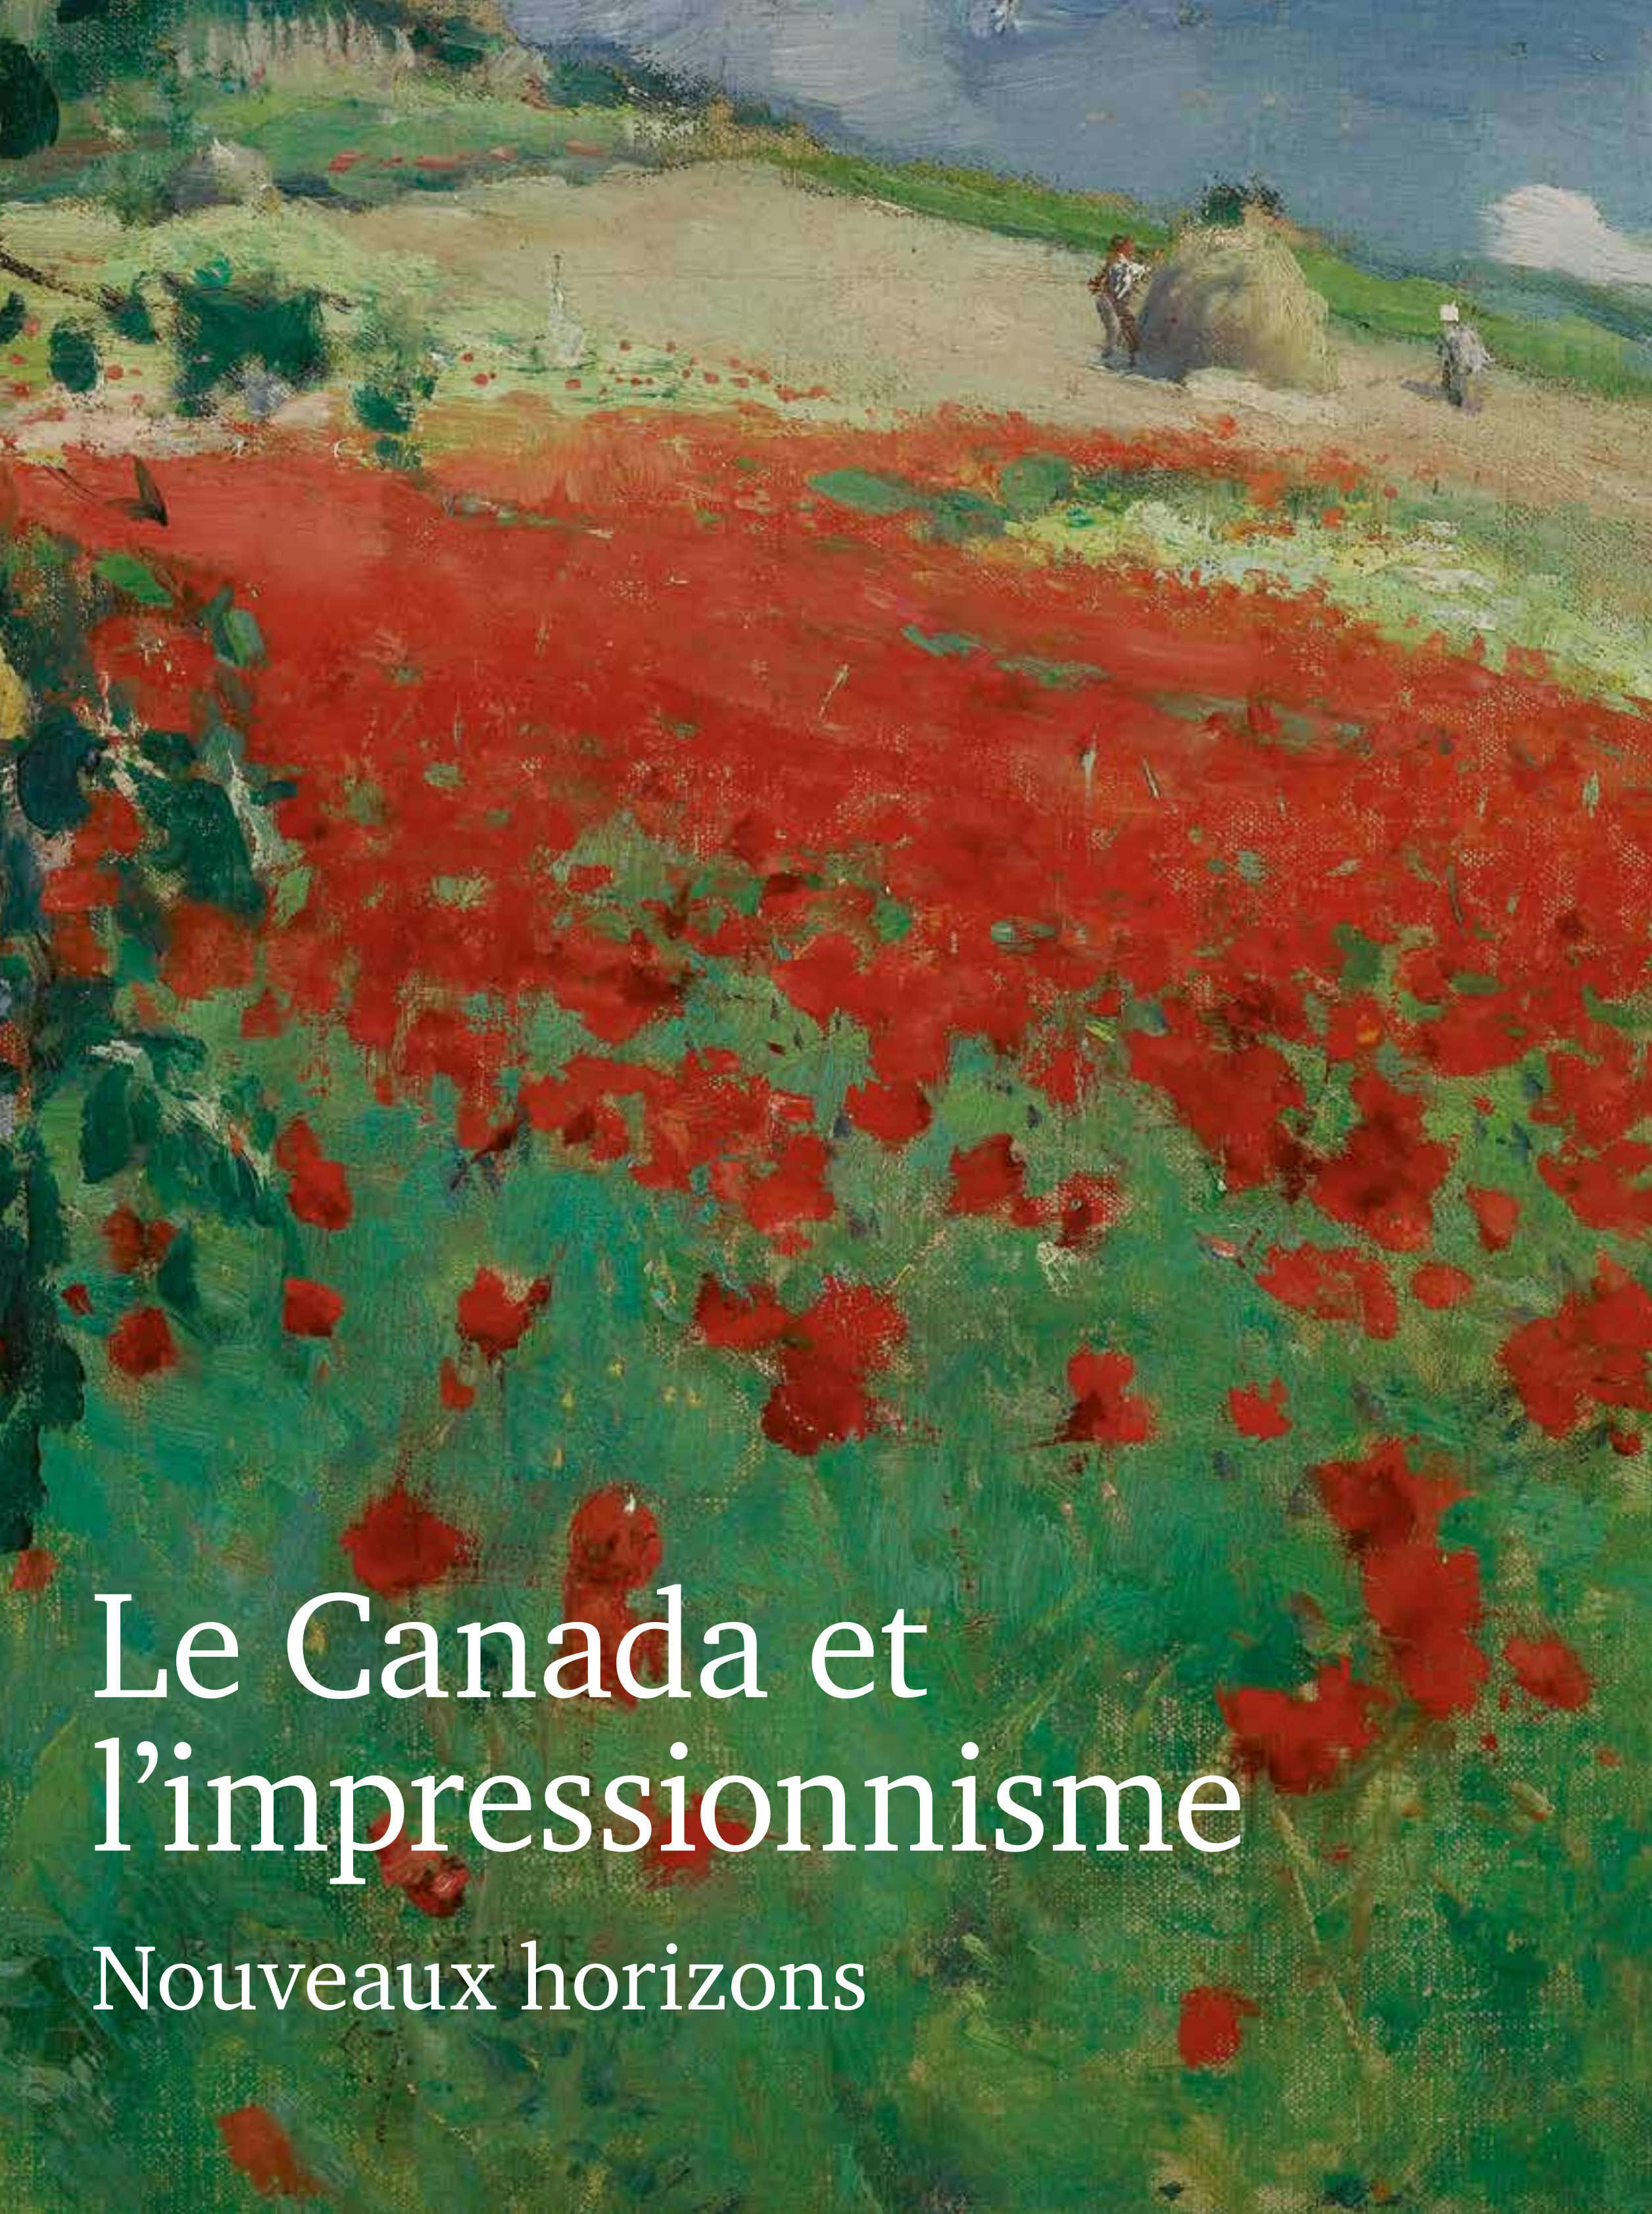 catalogue canada et impressionisme 